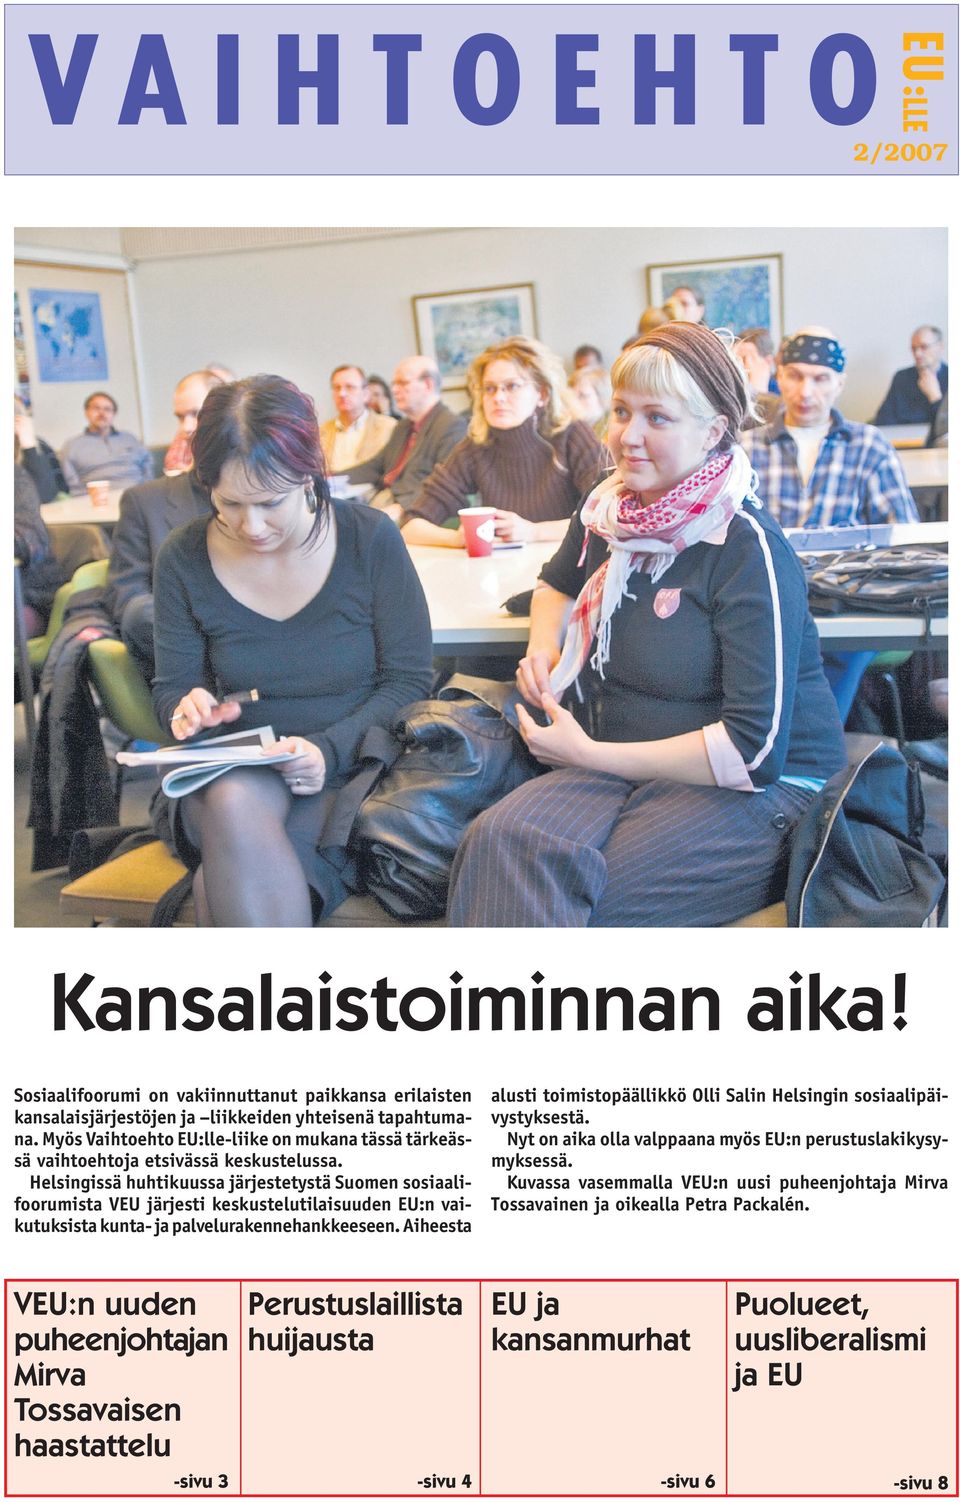 Helsingissä huhtikuussa järjestetystä Suomen sosiaalifoorumista VEU järjesti keskustelutilaisuuden EU:n vaikutuksista kunta- ja palvelurakennehankkeeseen.